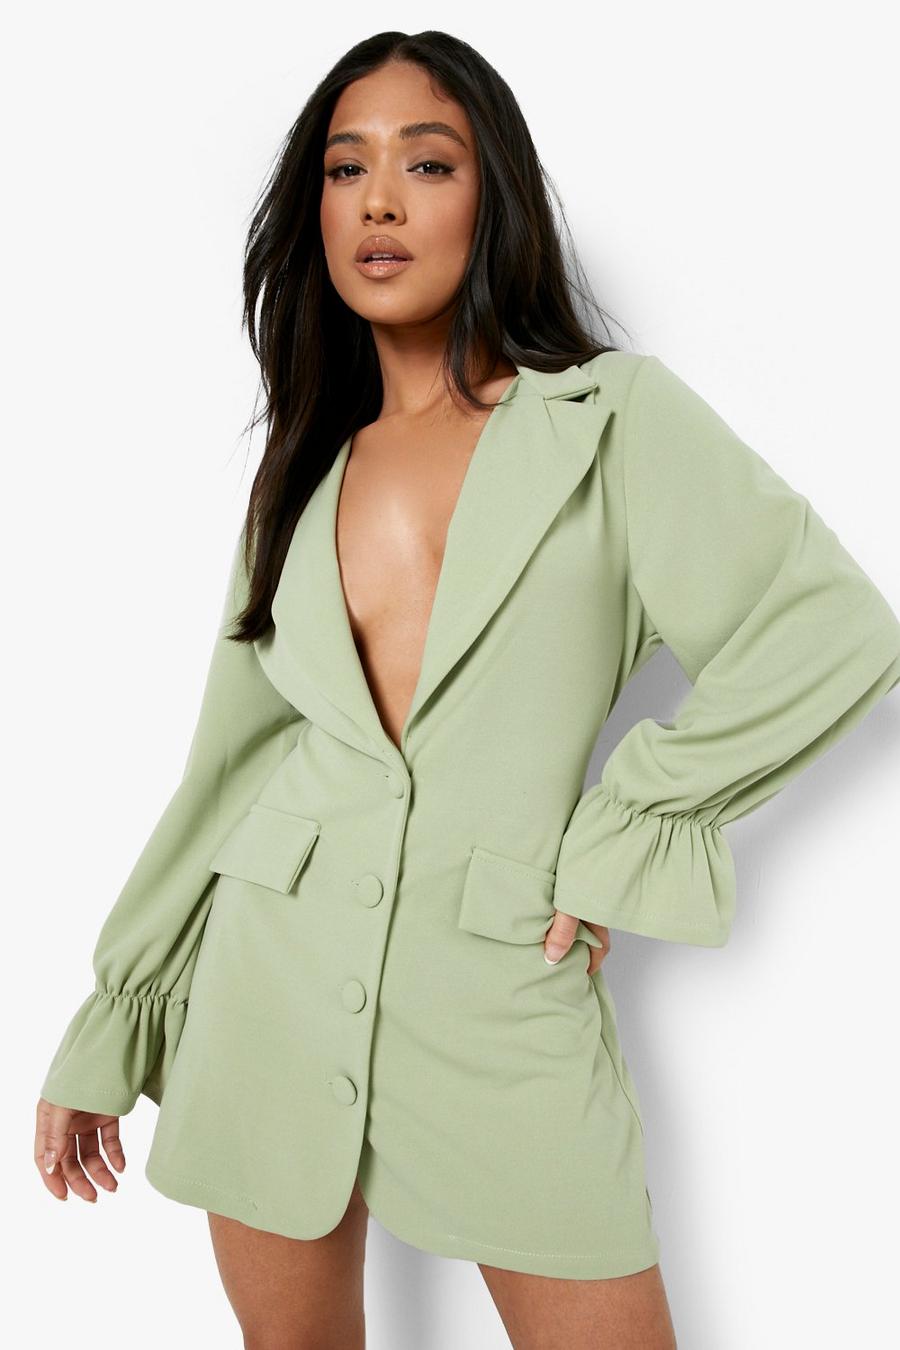 Mint green Petite Flare Cuff Pocket Detail Blazer Dress